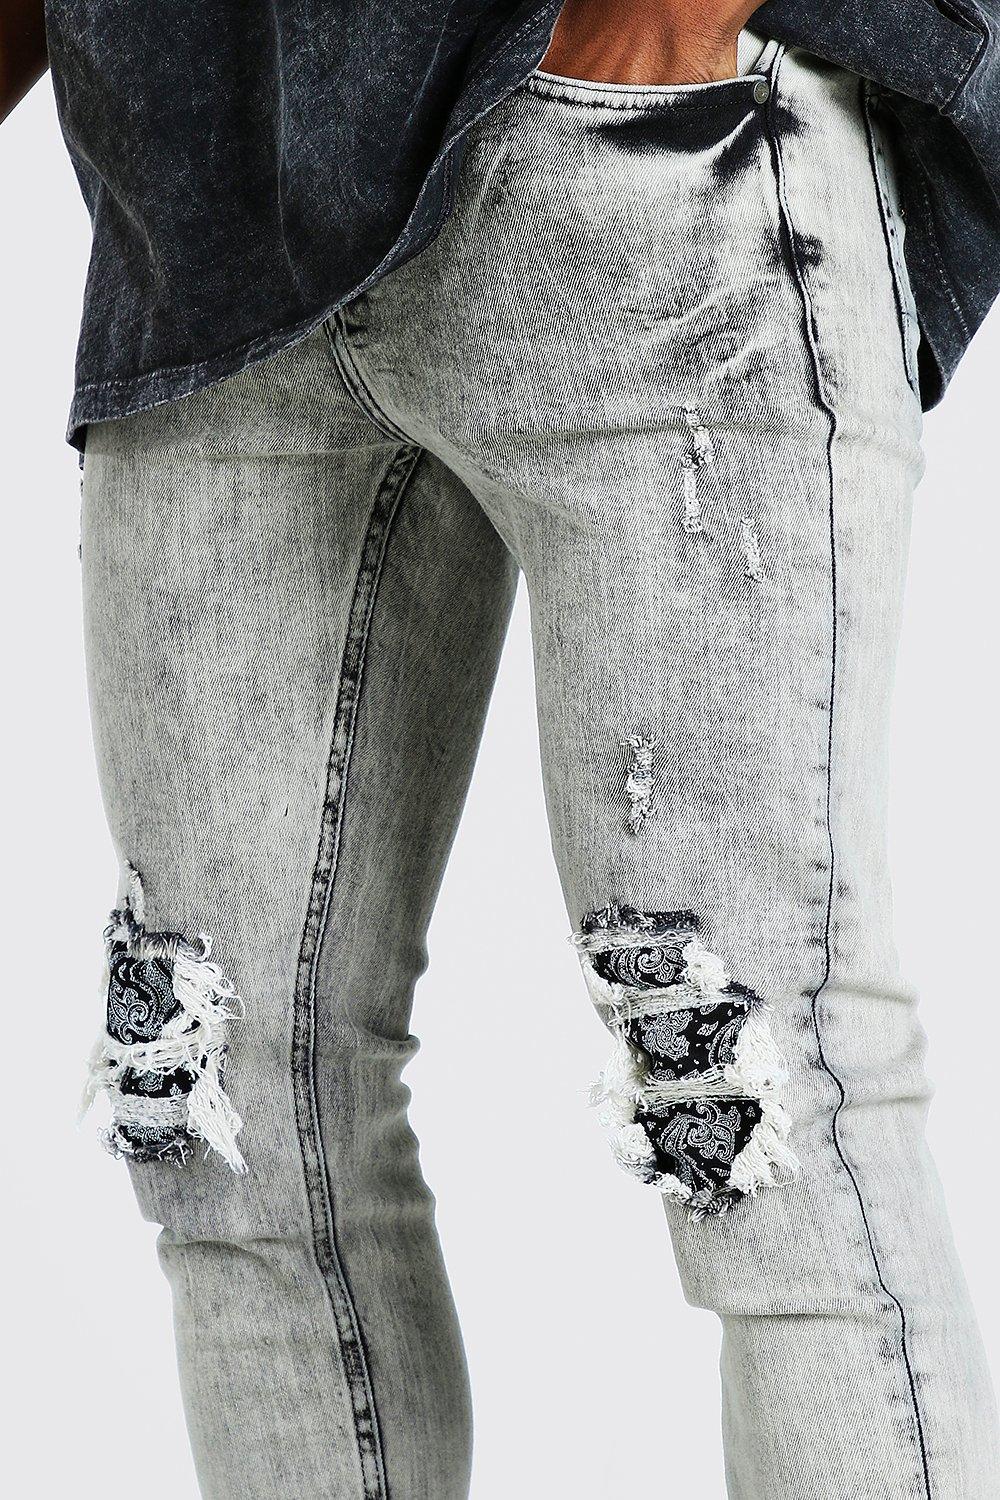 bandana ripped jeans